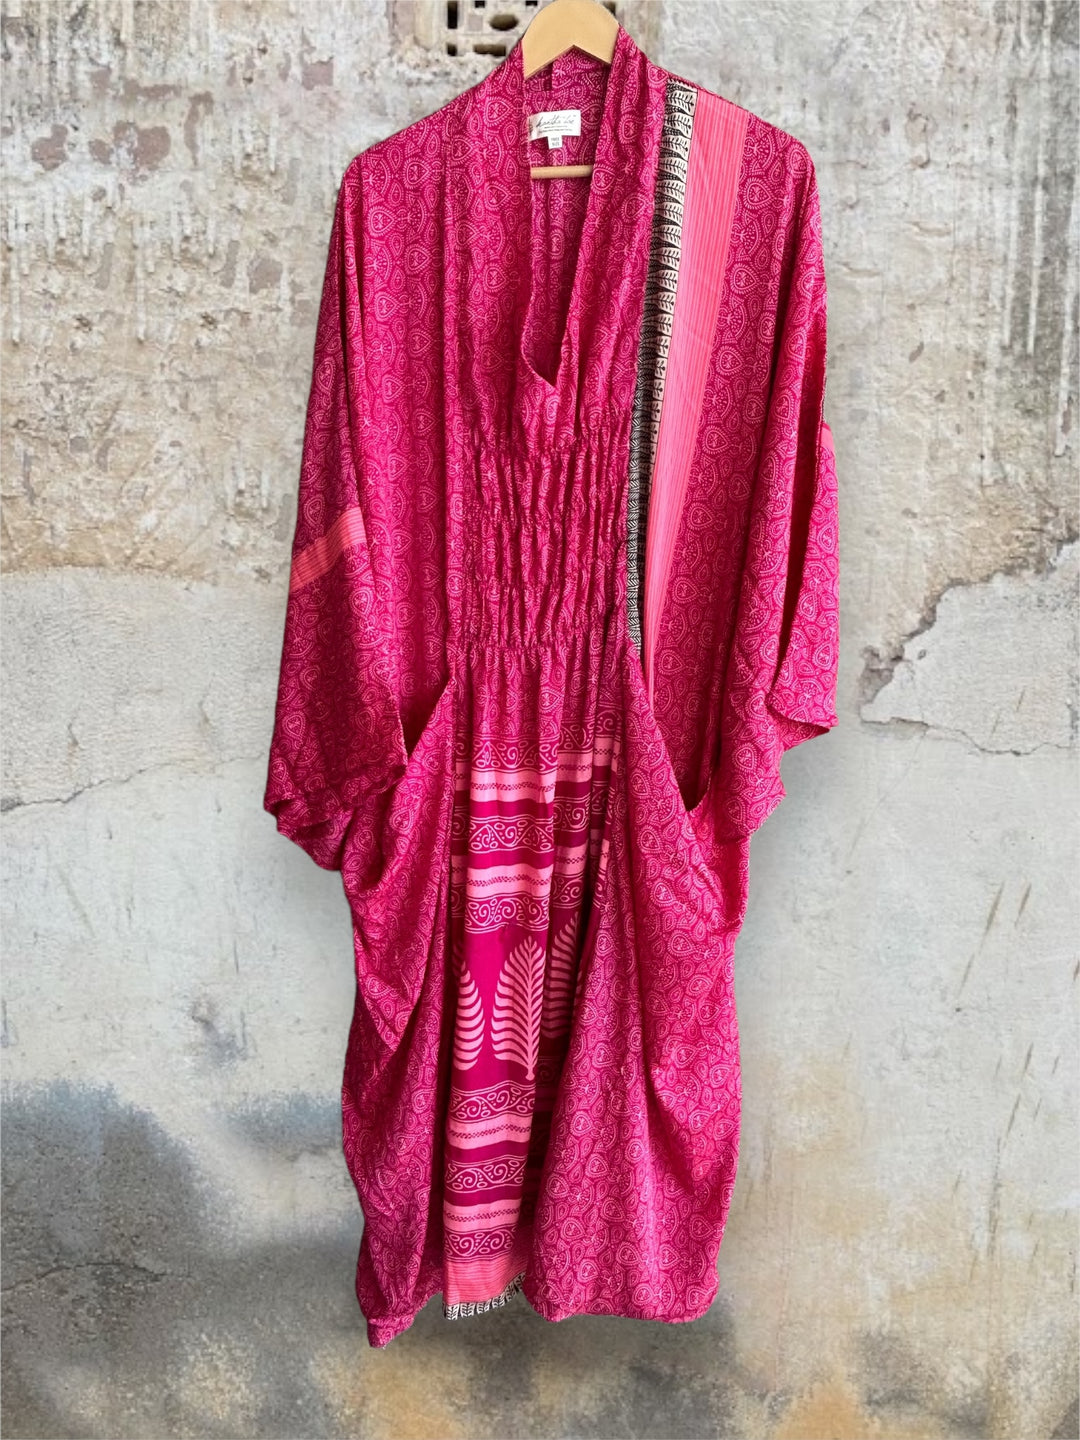 Ruched Dress 0424 159 - Kantha Bae